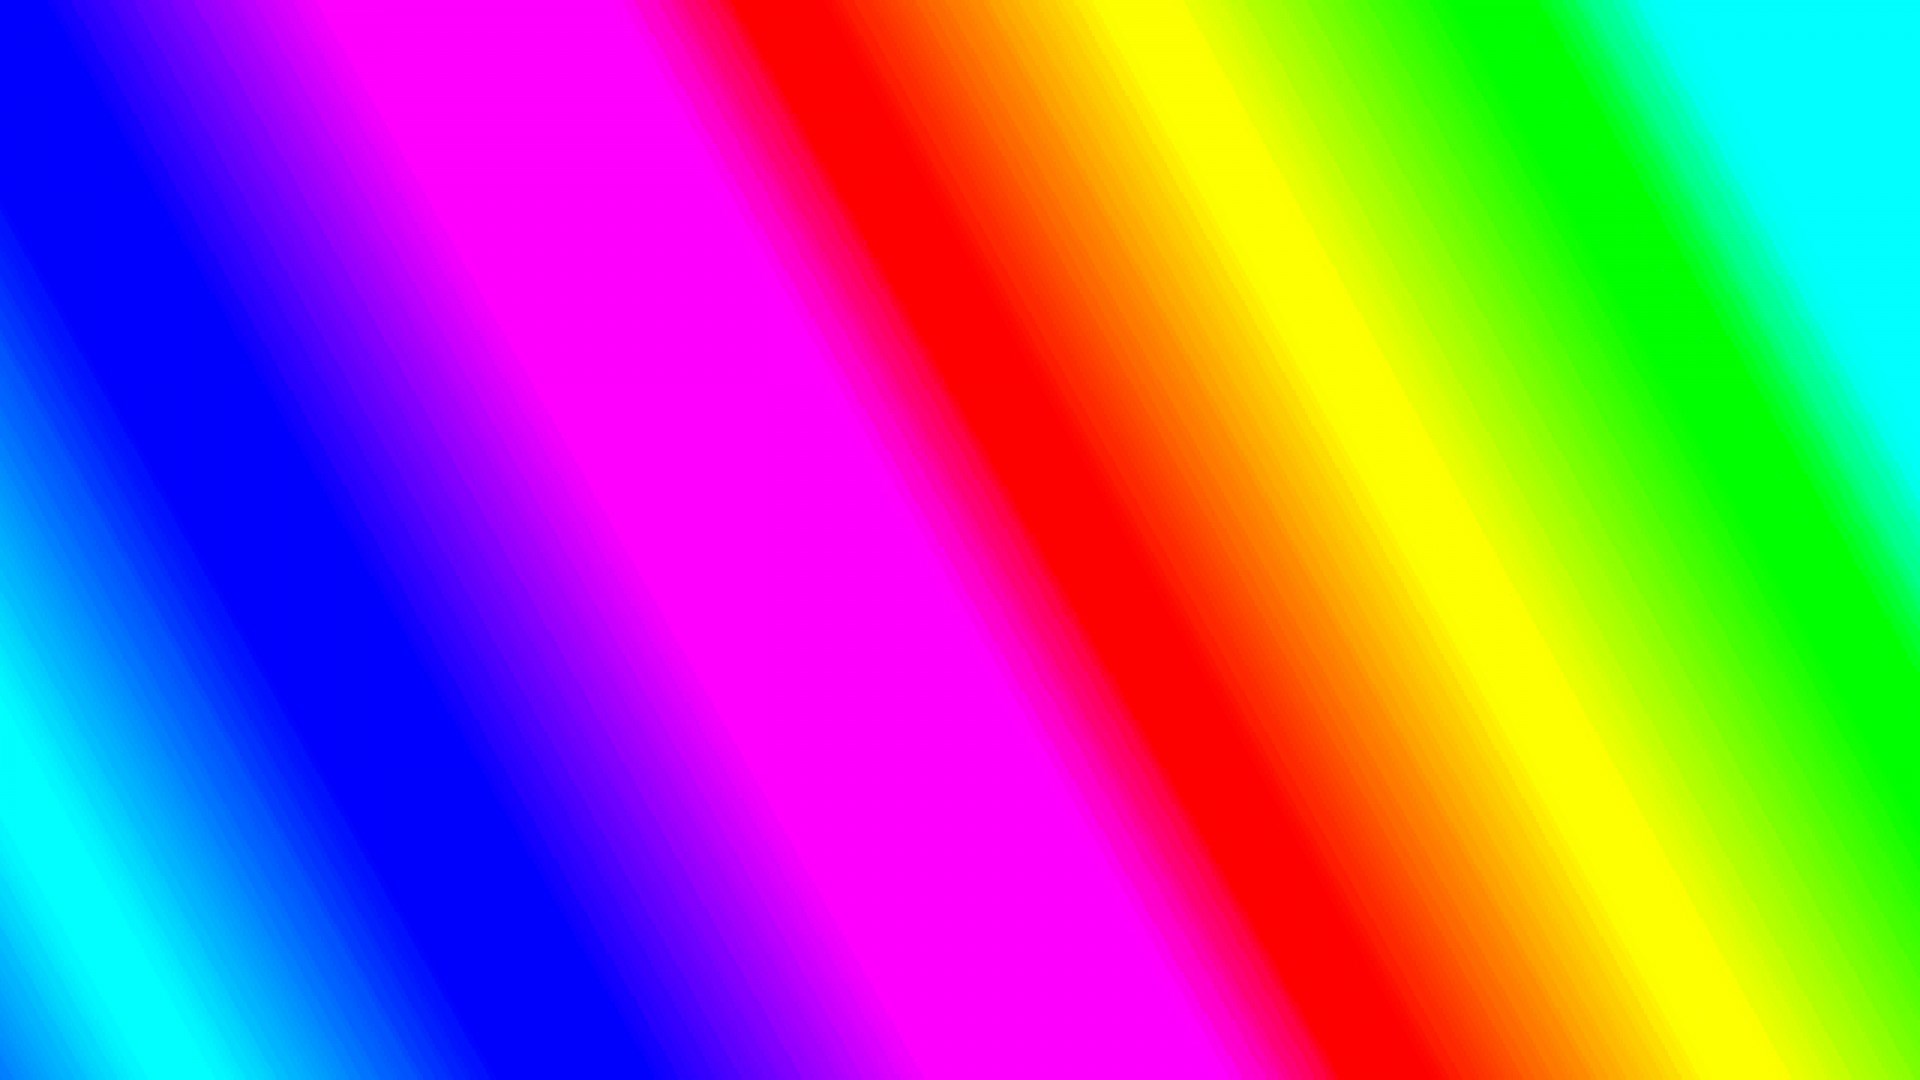 regenbogen desktop hintergrund,blau,grün,gelb,buntheit,licht